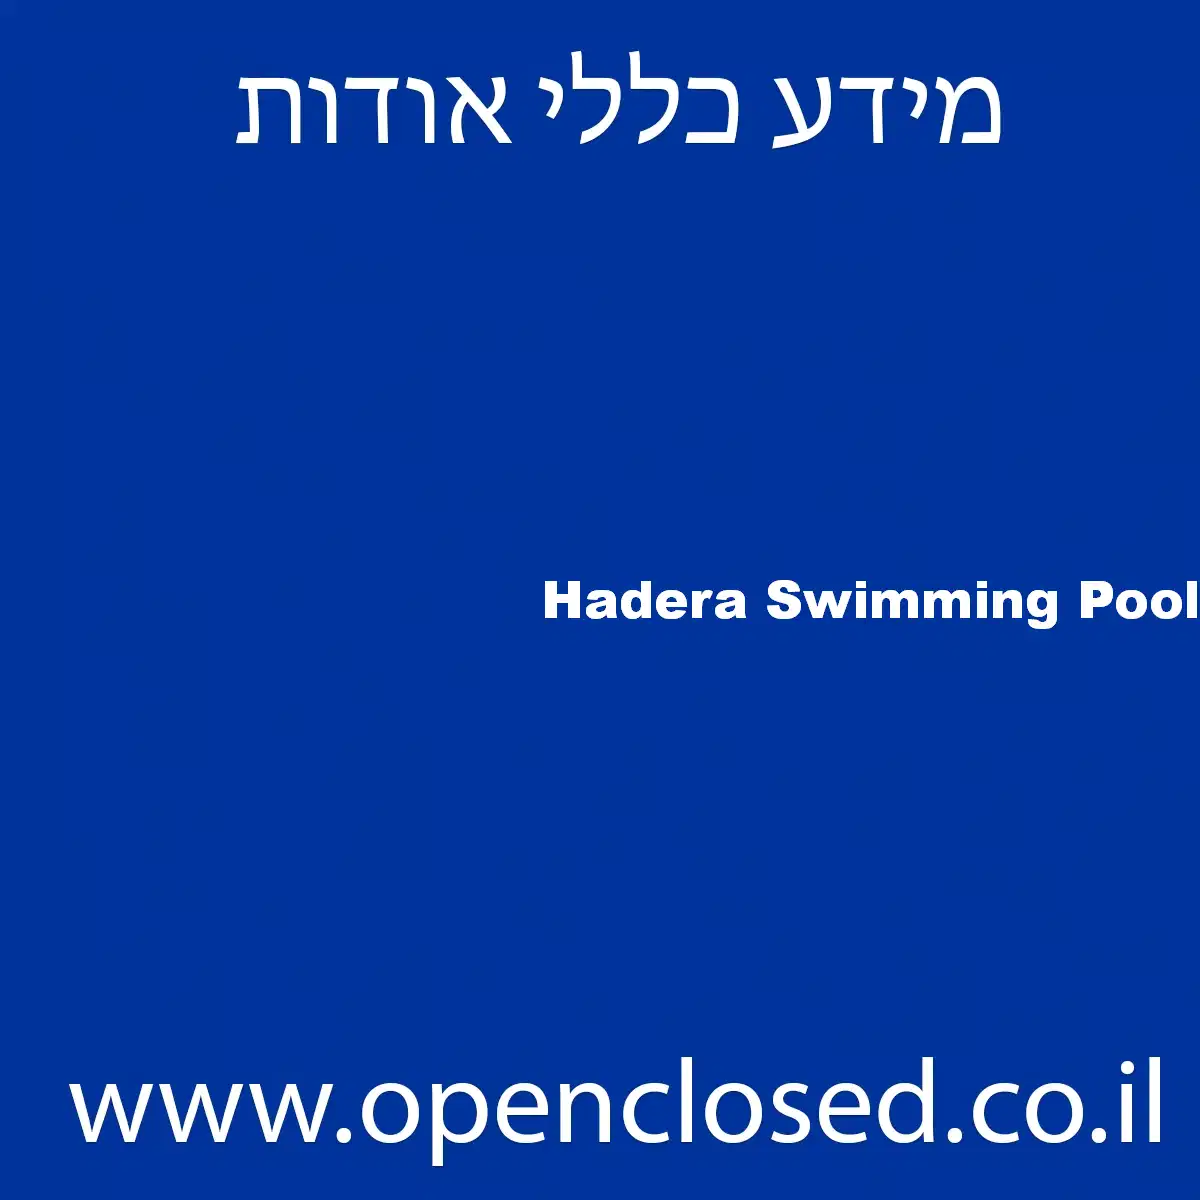 Hadera Swimming Pool